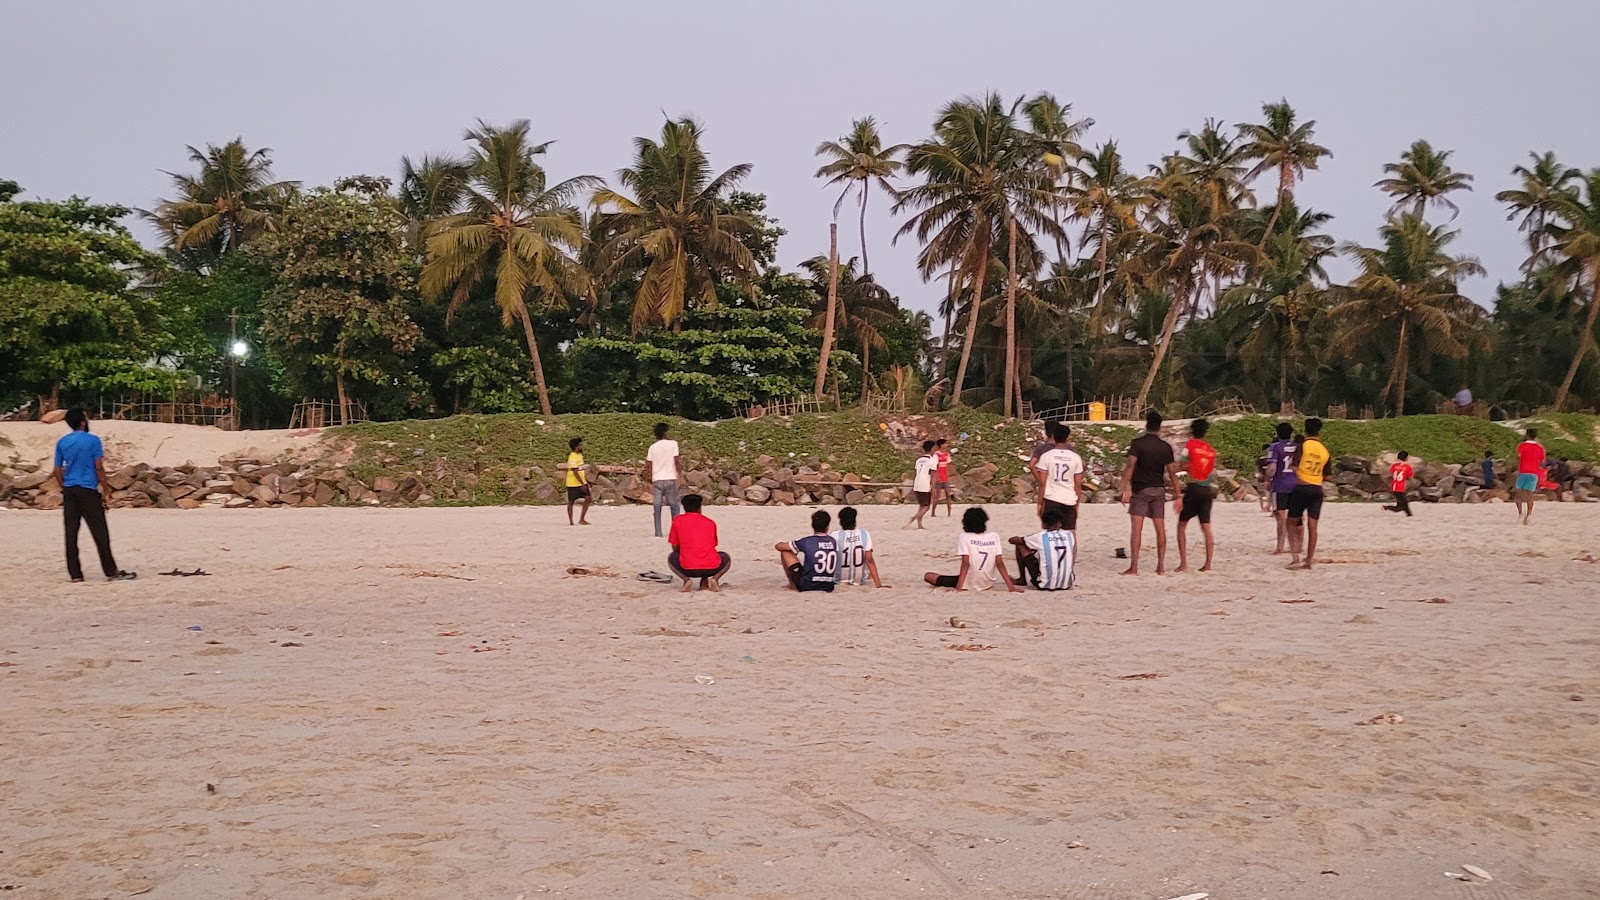 Chellanam Beach Kochi的照片 具有部分干净级别的清洁度